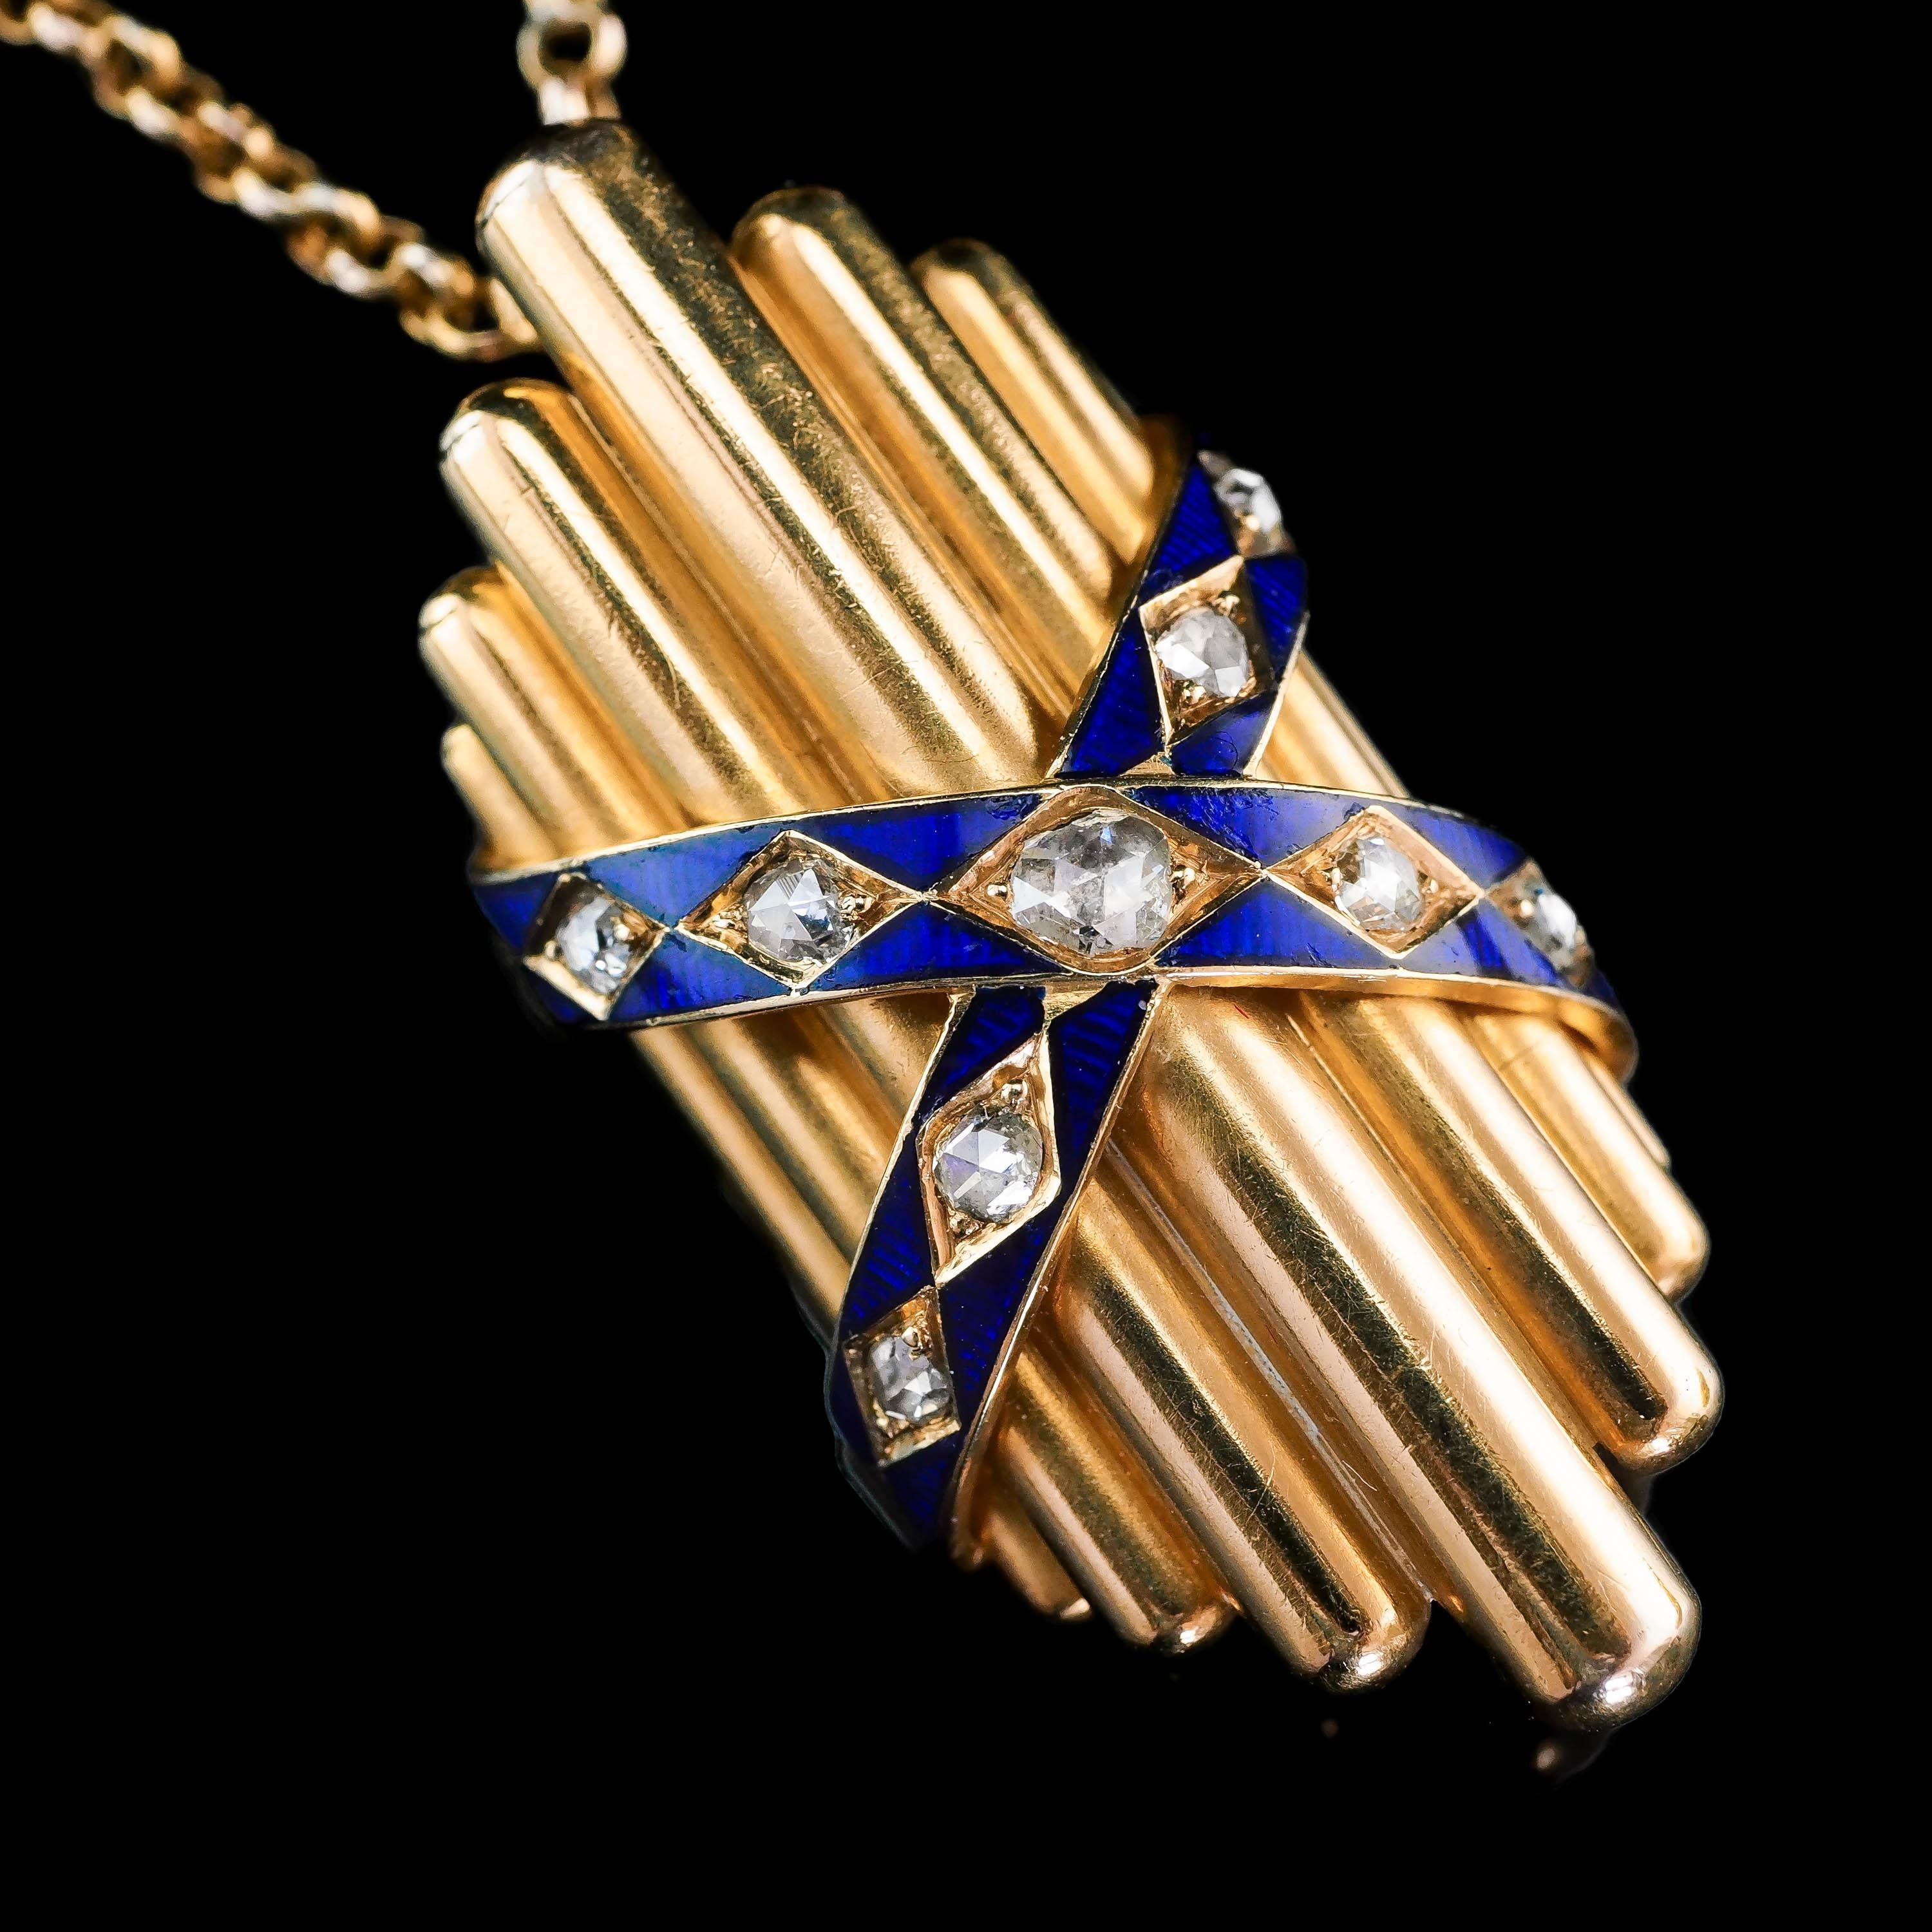 Antique Victorian 18ct Gold Enamel Necklace Rose Cut Diamond Pendant - c.1880 For Sale 9